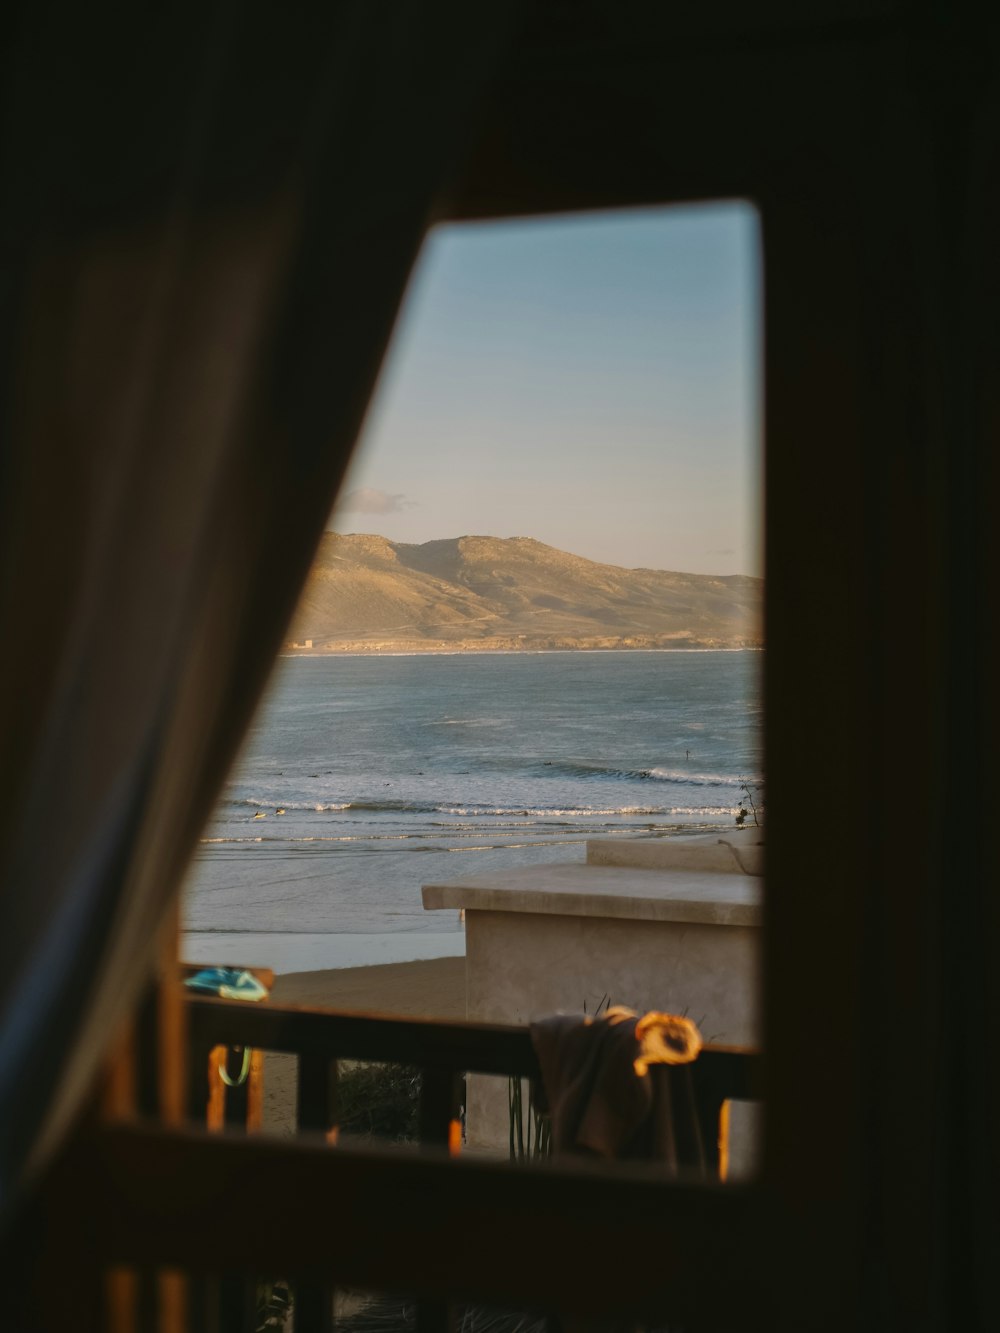 Una vista de una playa desde una ventana